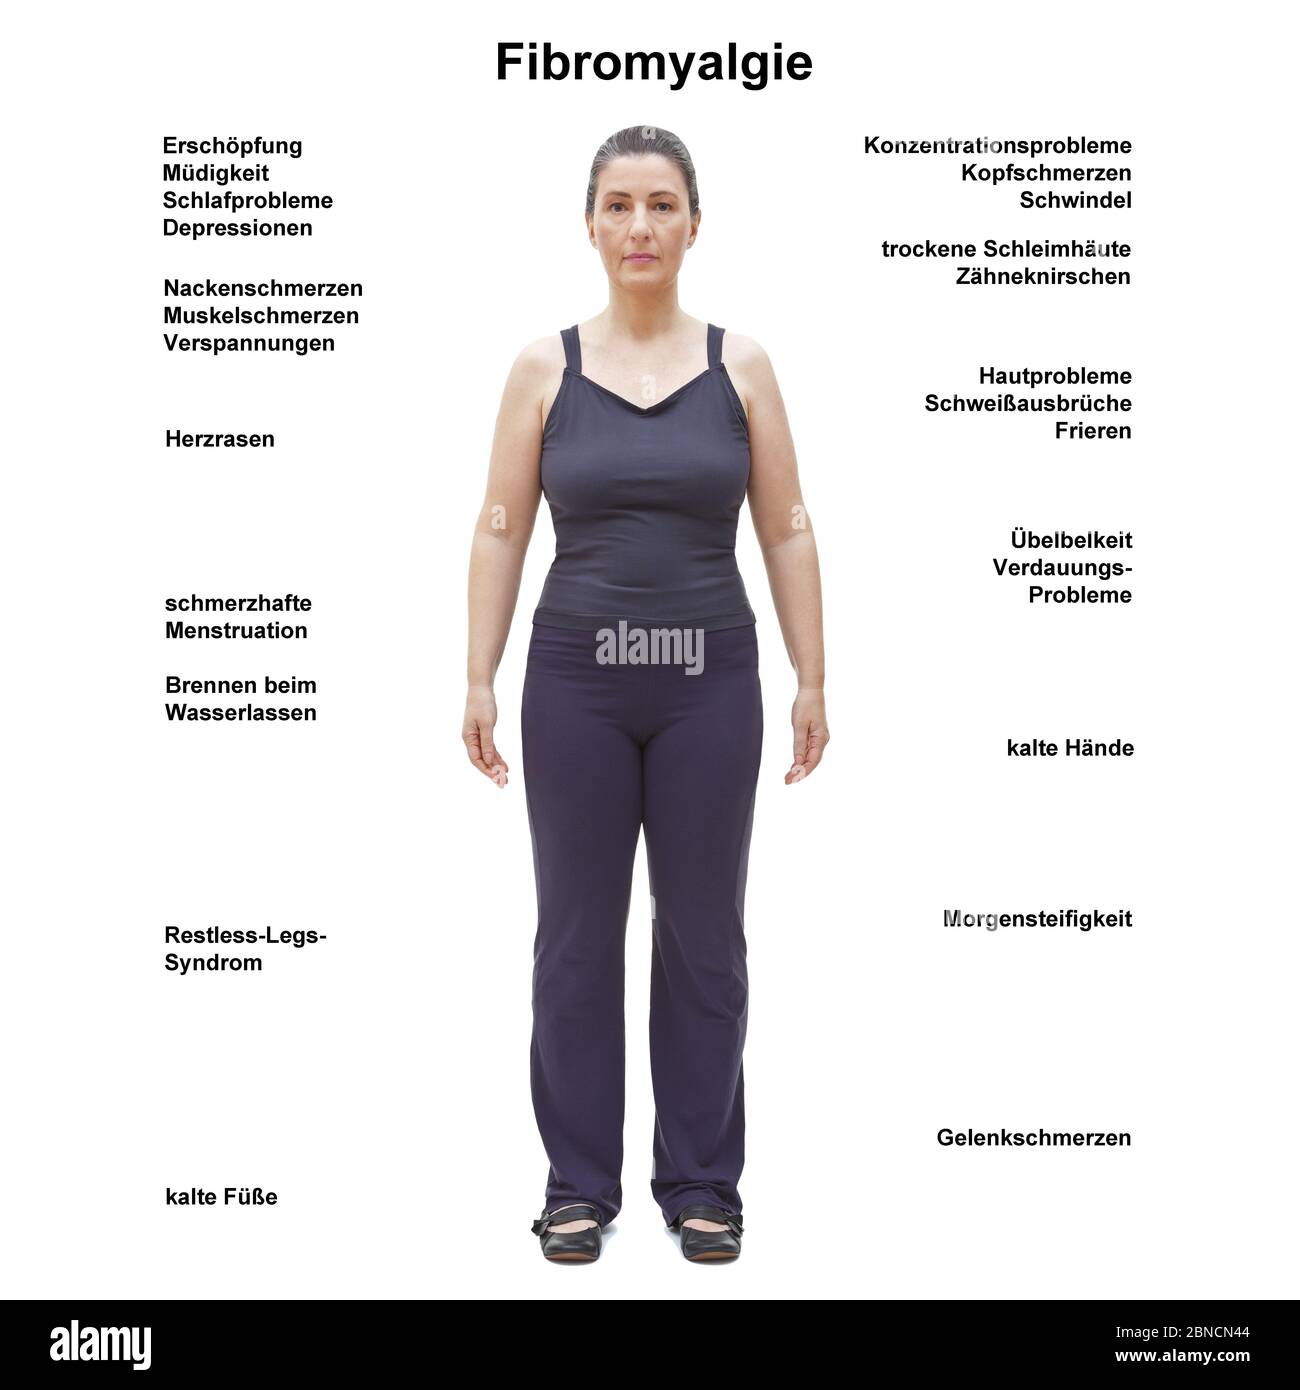 Fibromyalgie /fibromyalgie : corps féminin présentant les symptômes les plus courants, texte allemand. Banque D'Images